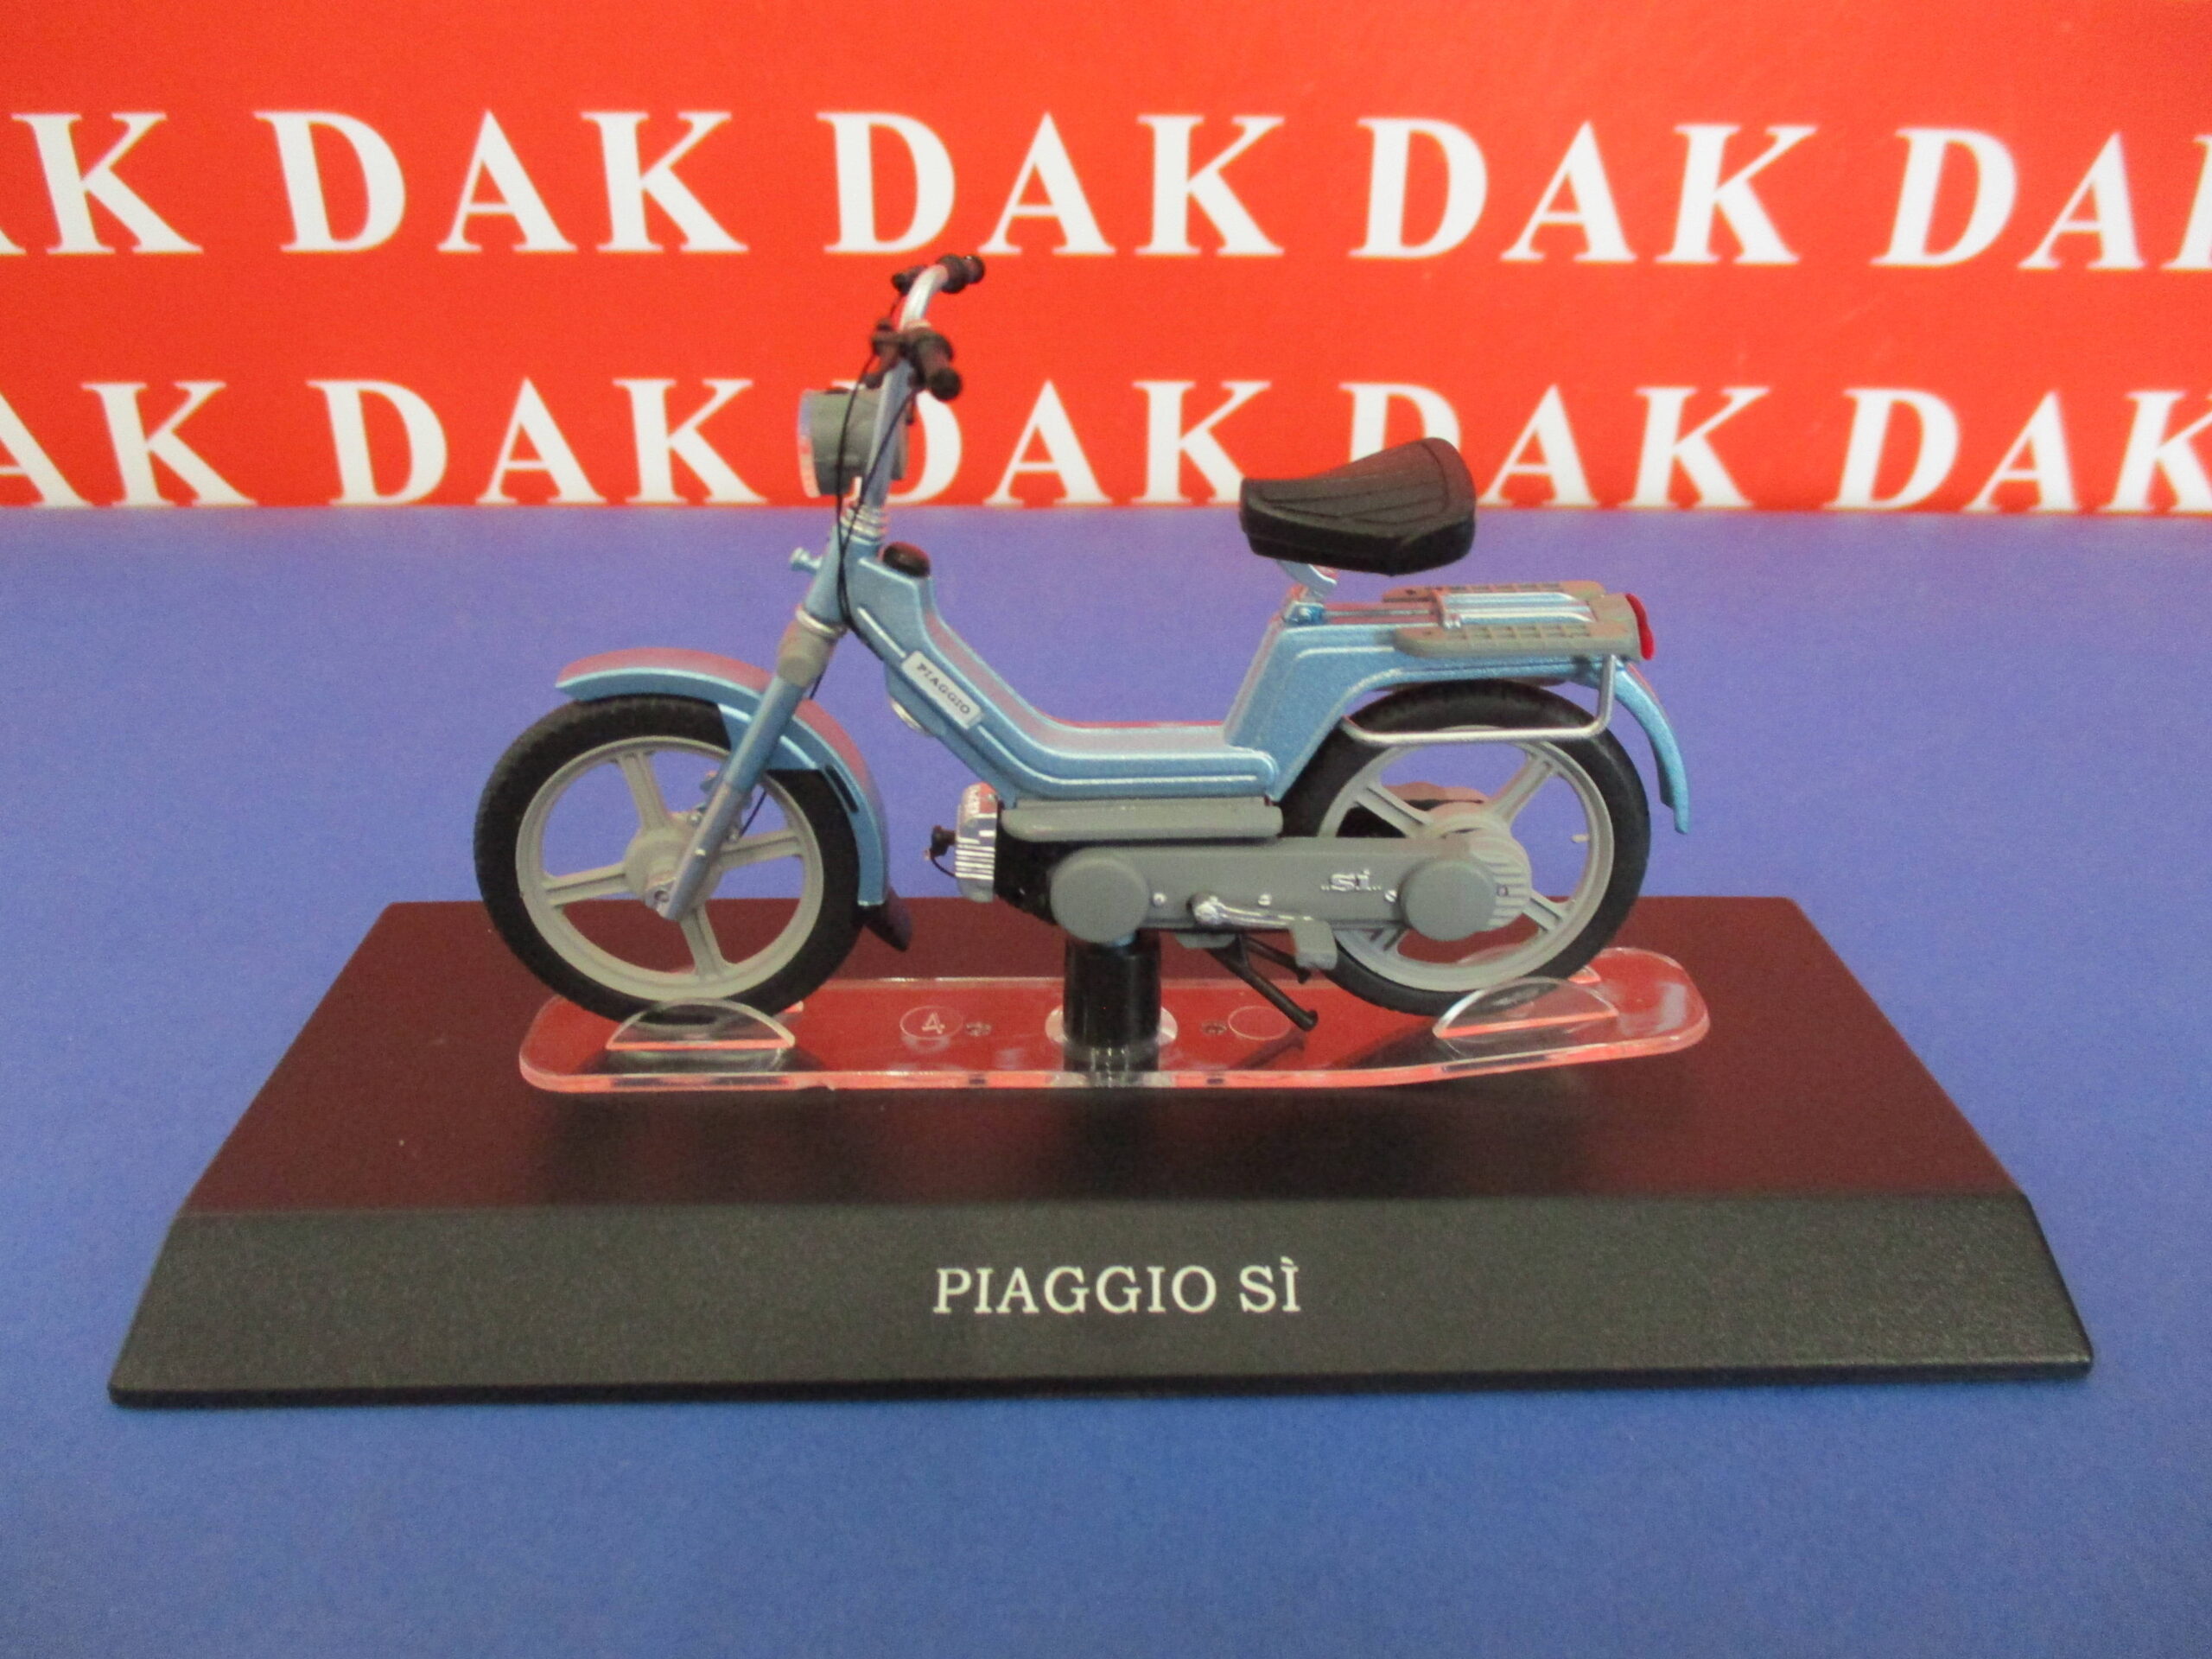 1978 Die cast 1/18 Piaggio Si scooter model